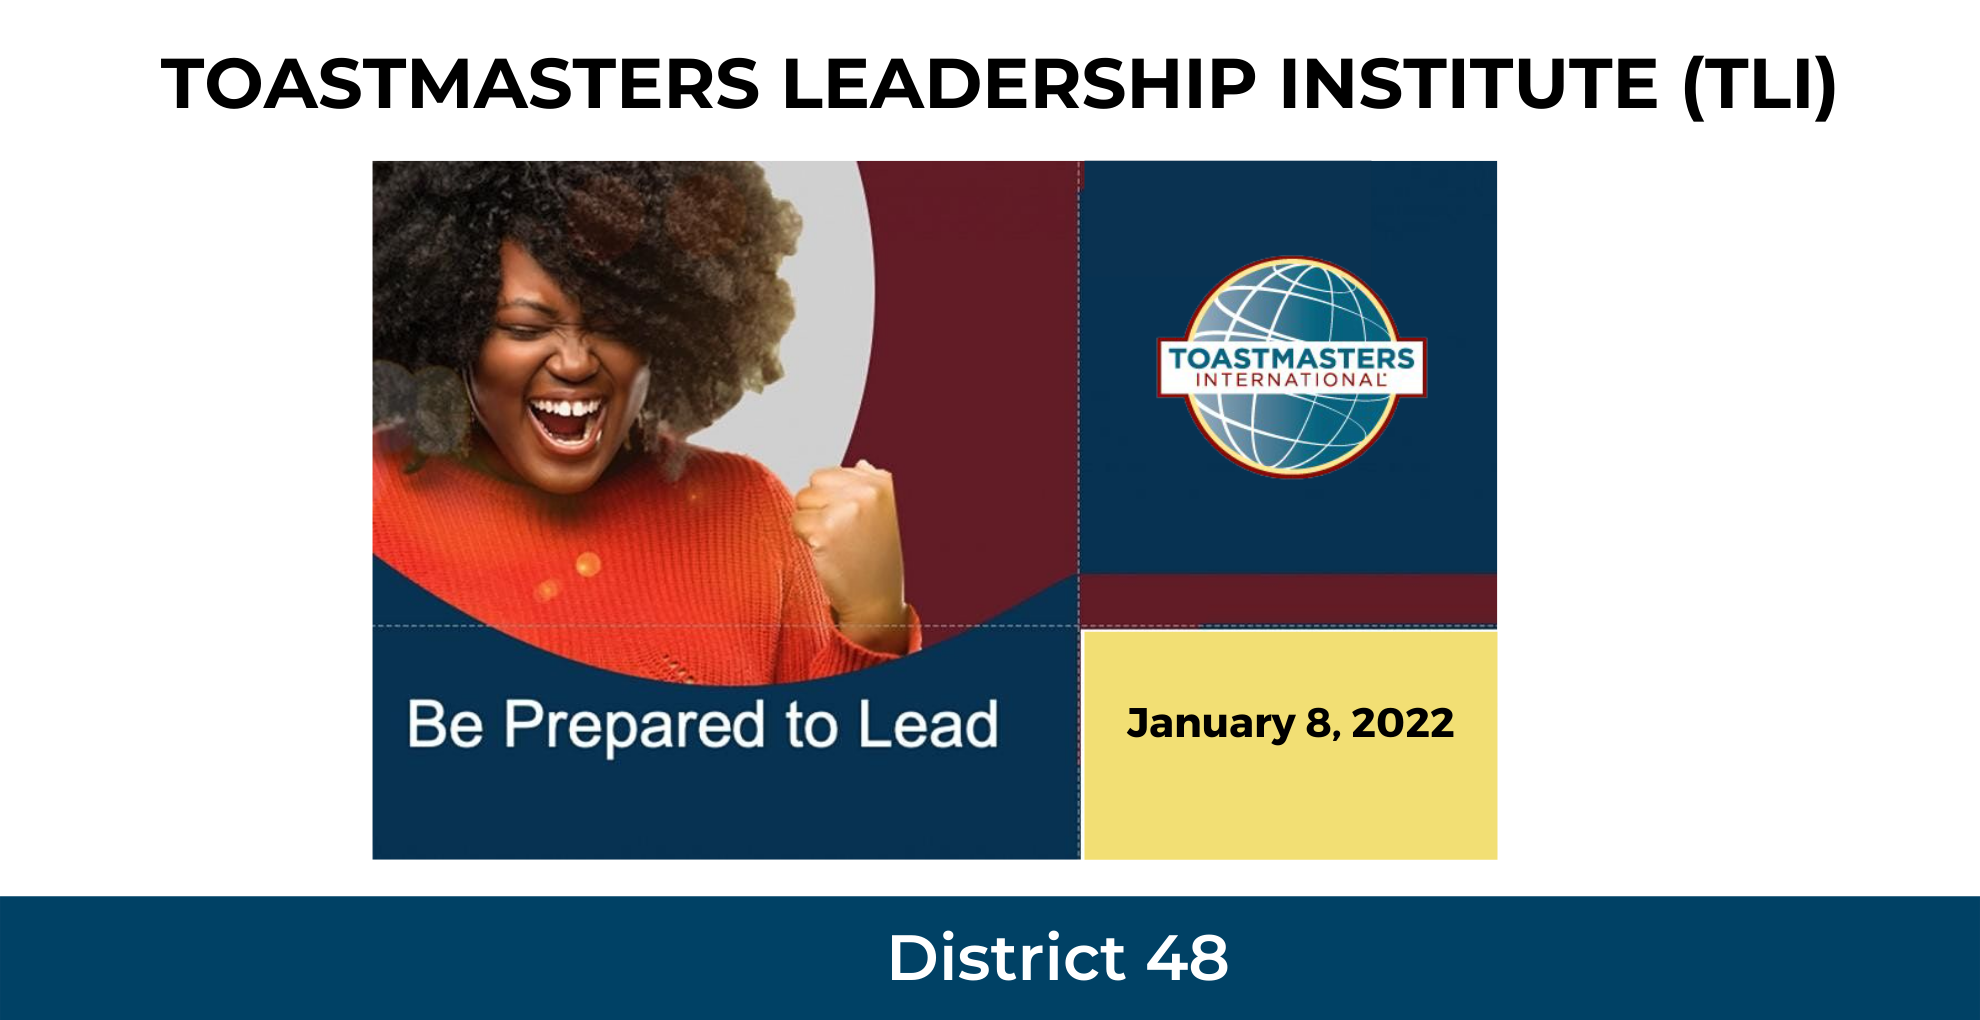 Image: Toastmasters Leadership Institute - January 8, 2022